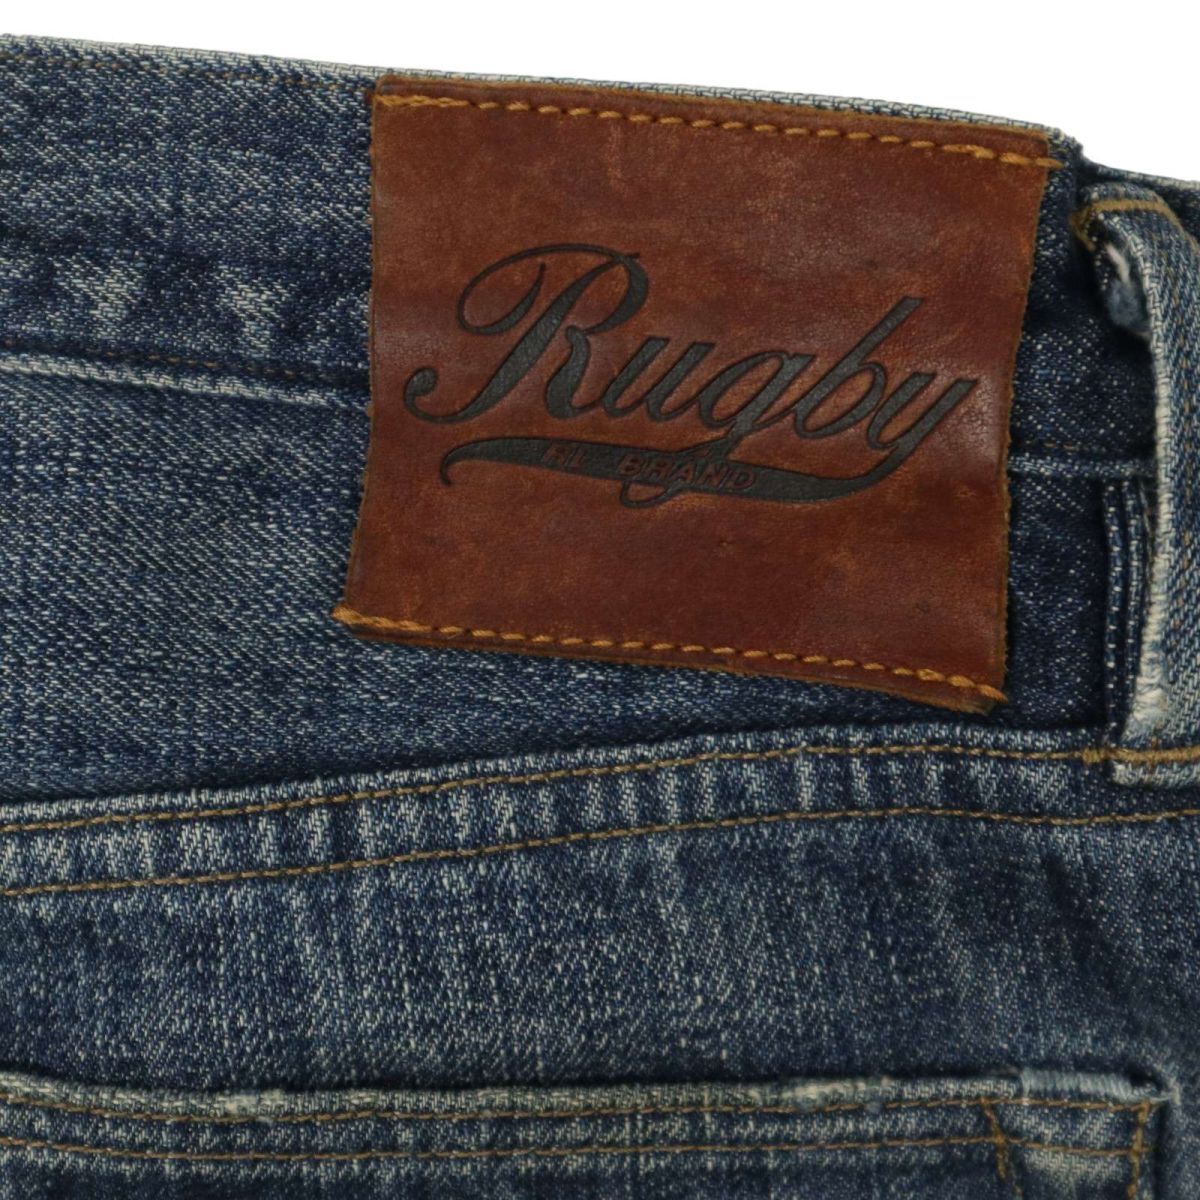 RUGBY регби Ralph Lauren через год USED обработка * тонкий конический Denim брюки джинсы Sz.30×32 мужской C4B01941_4#R